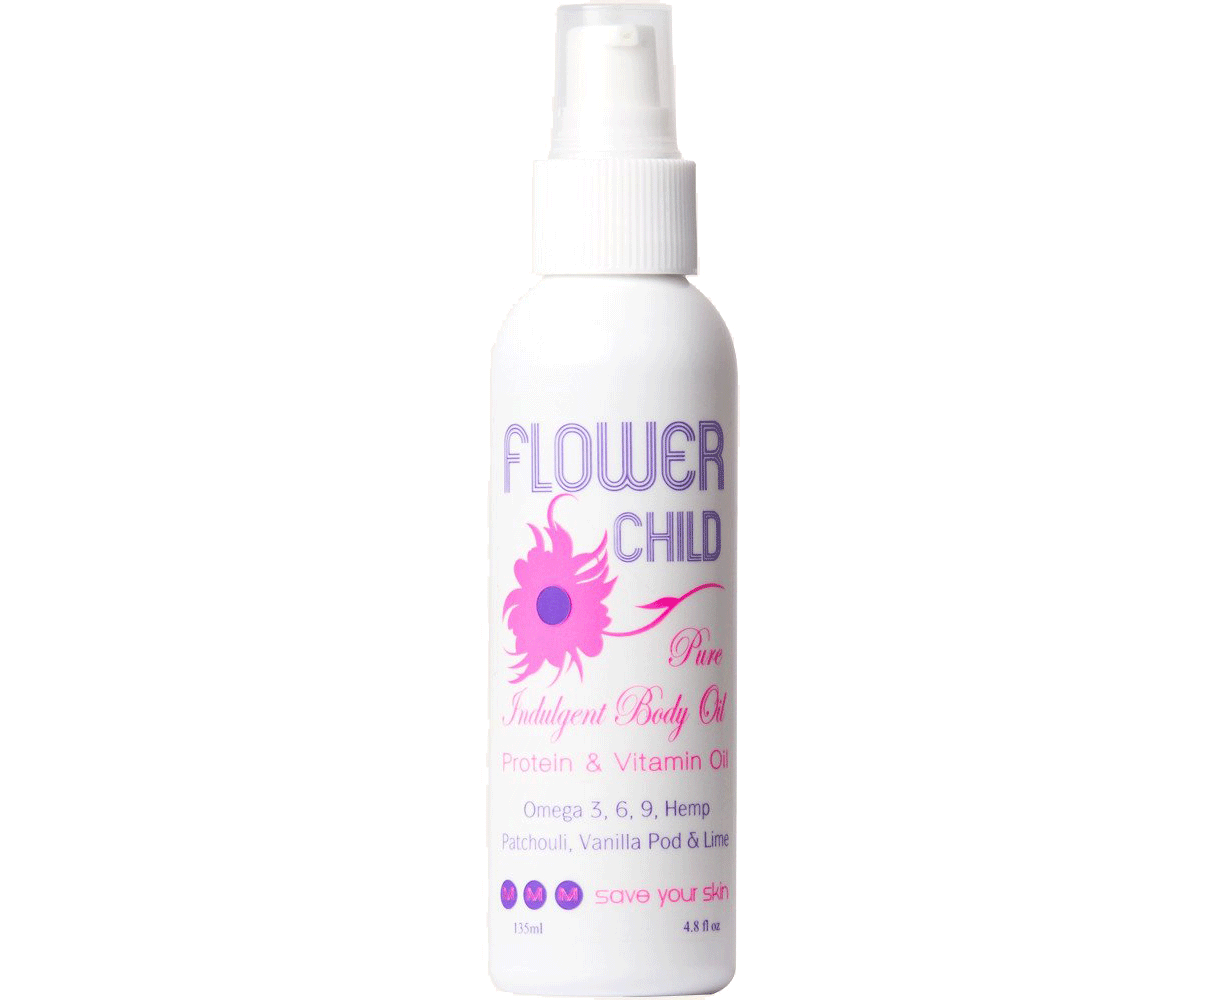 Flower Child - Body Moisturising Oil - 135ml - Natural Skin + Body Oil